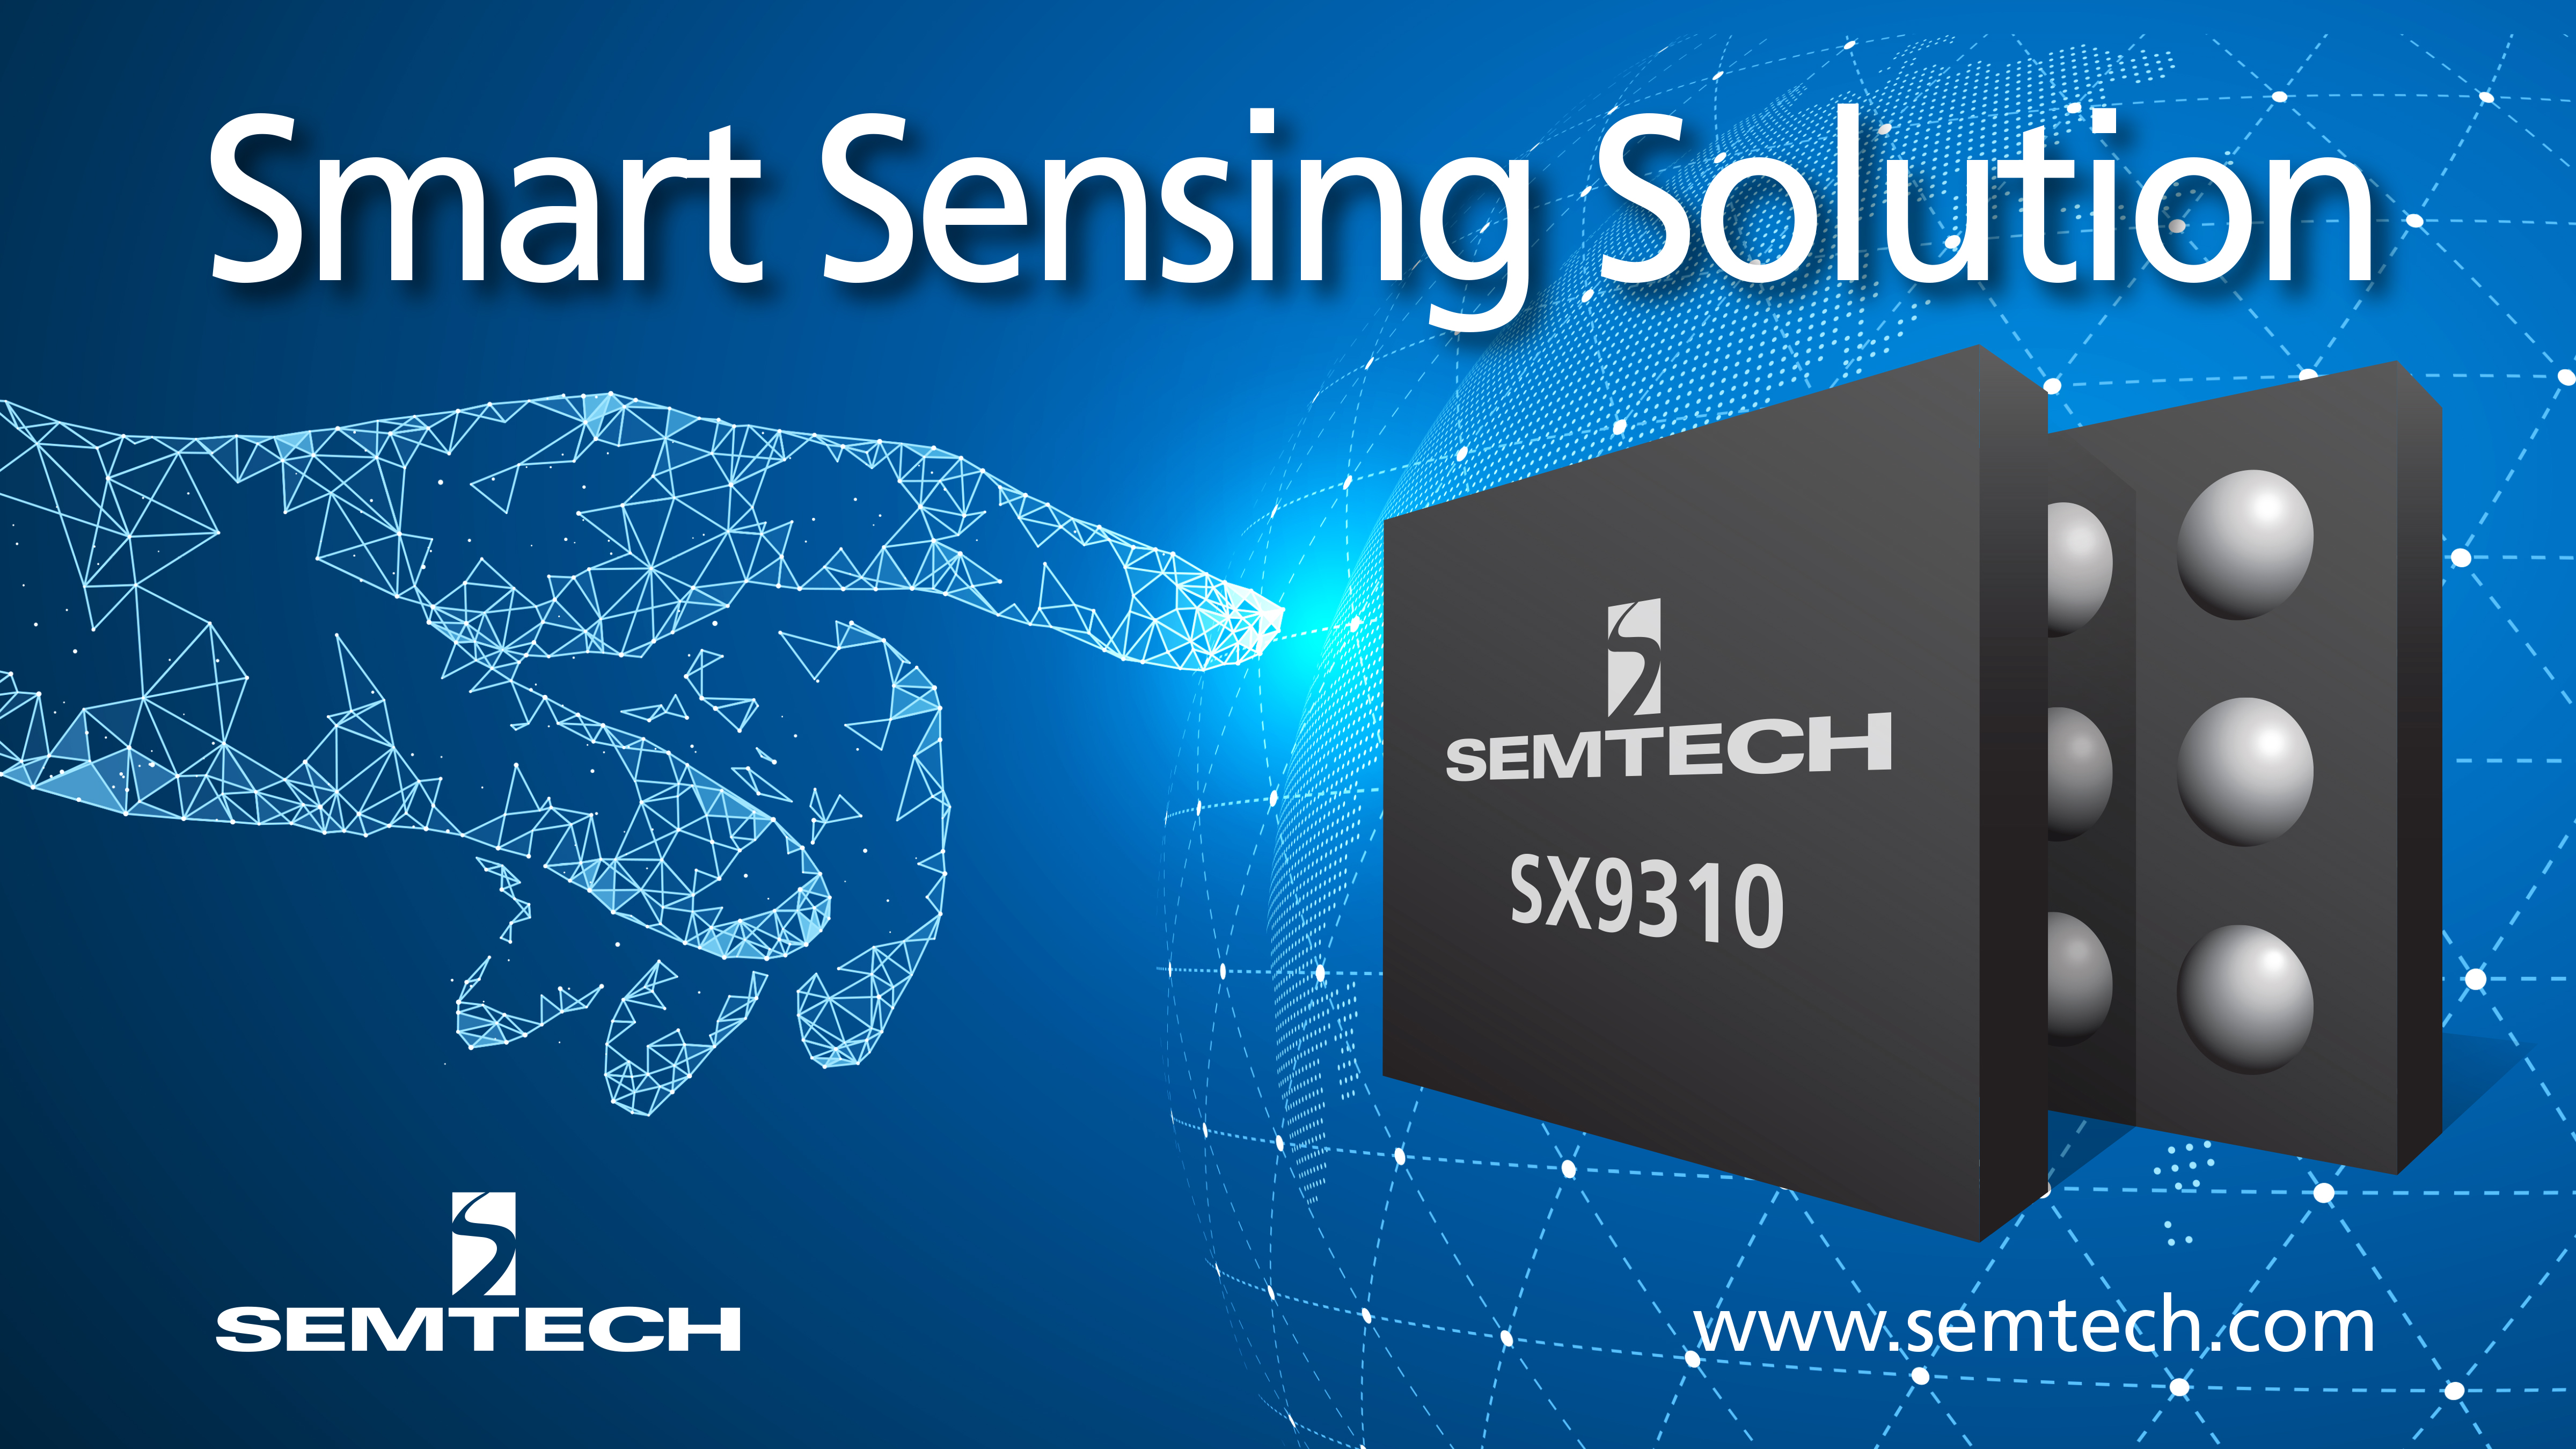 Semtech Smart Sensing Solution